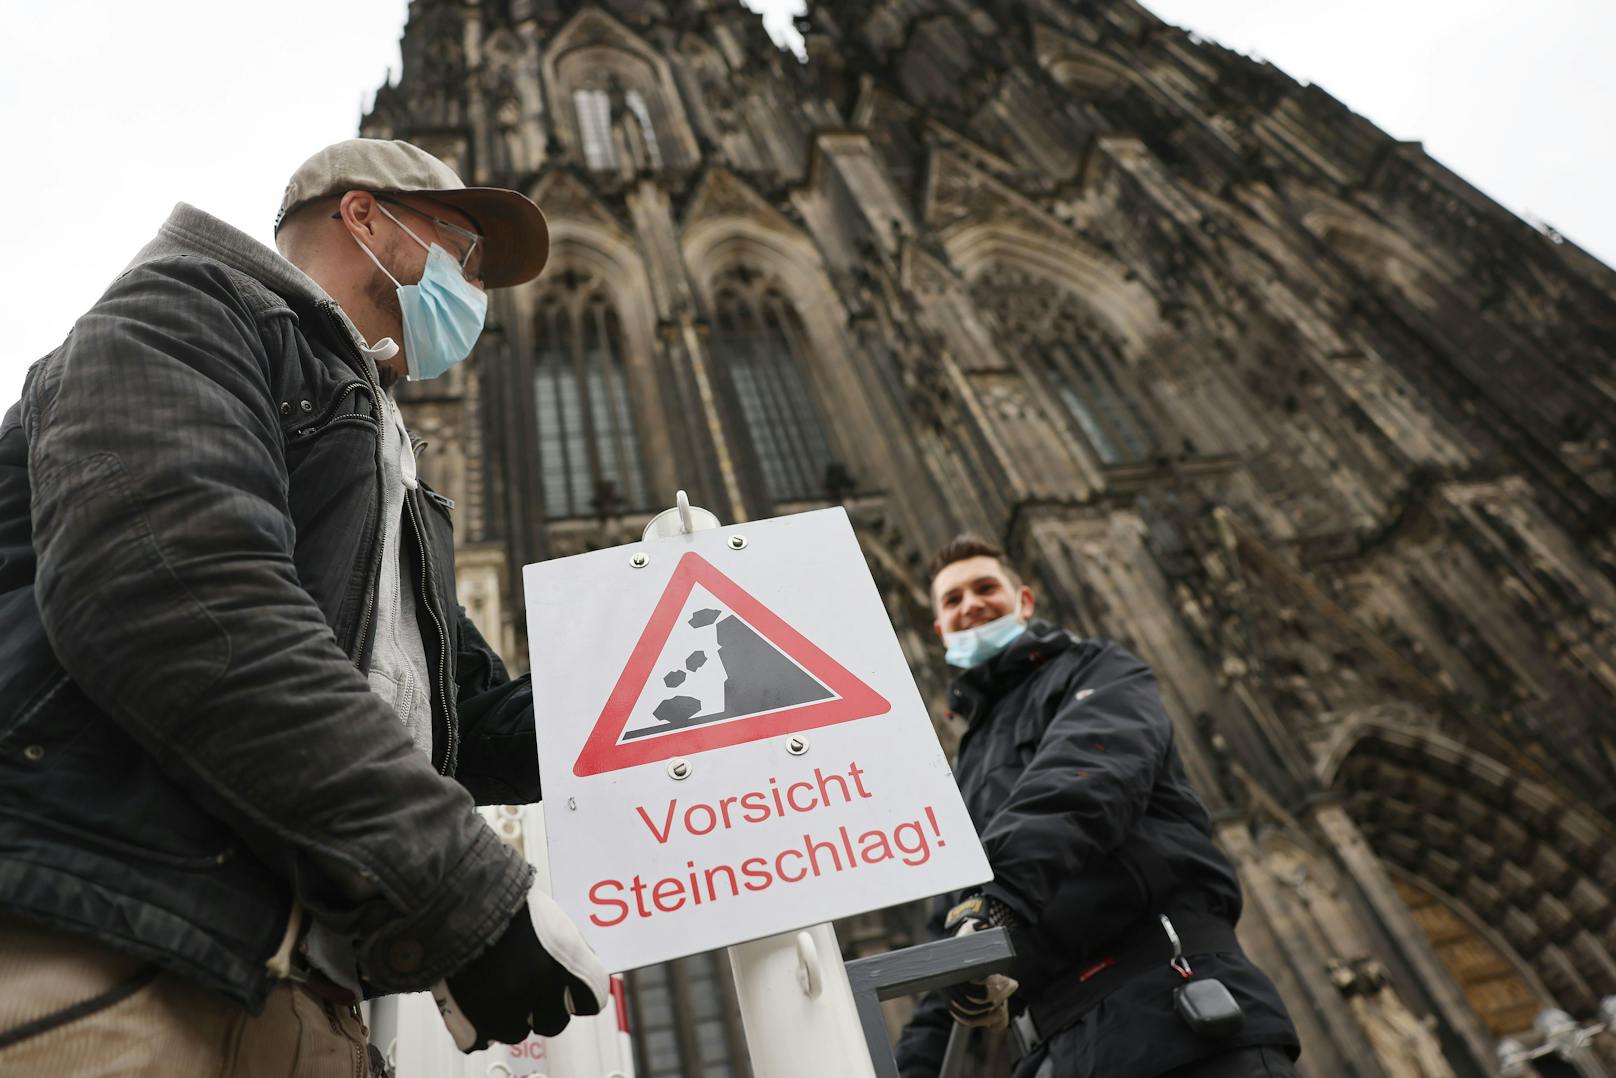 Vor dem Kölner Dom warnen Schilder vor der Gefahr von möglichem Steinschlag.